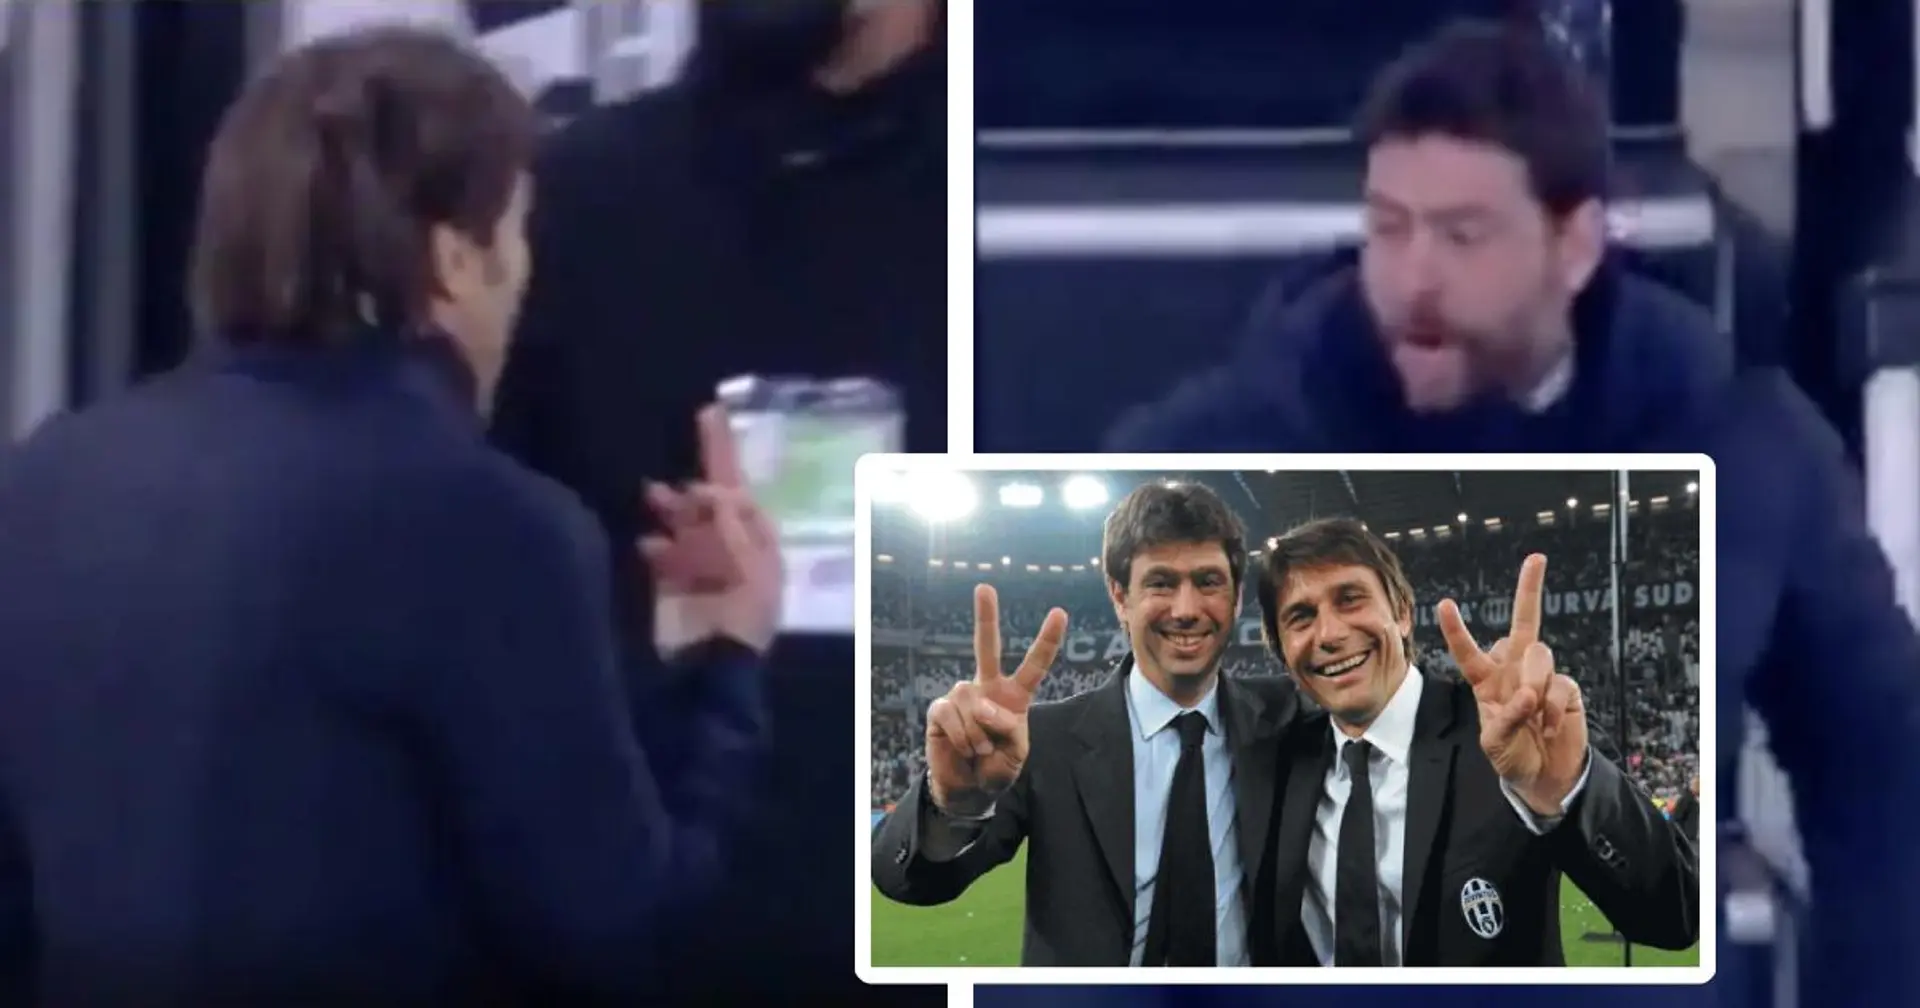 Conte zeigt der Juve-Bank den Mittelfinger, Agnelli antwortet: "Steck dir den Finger in den Arsch, B* * * * "